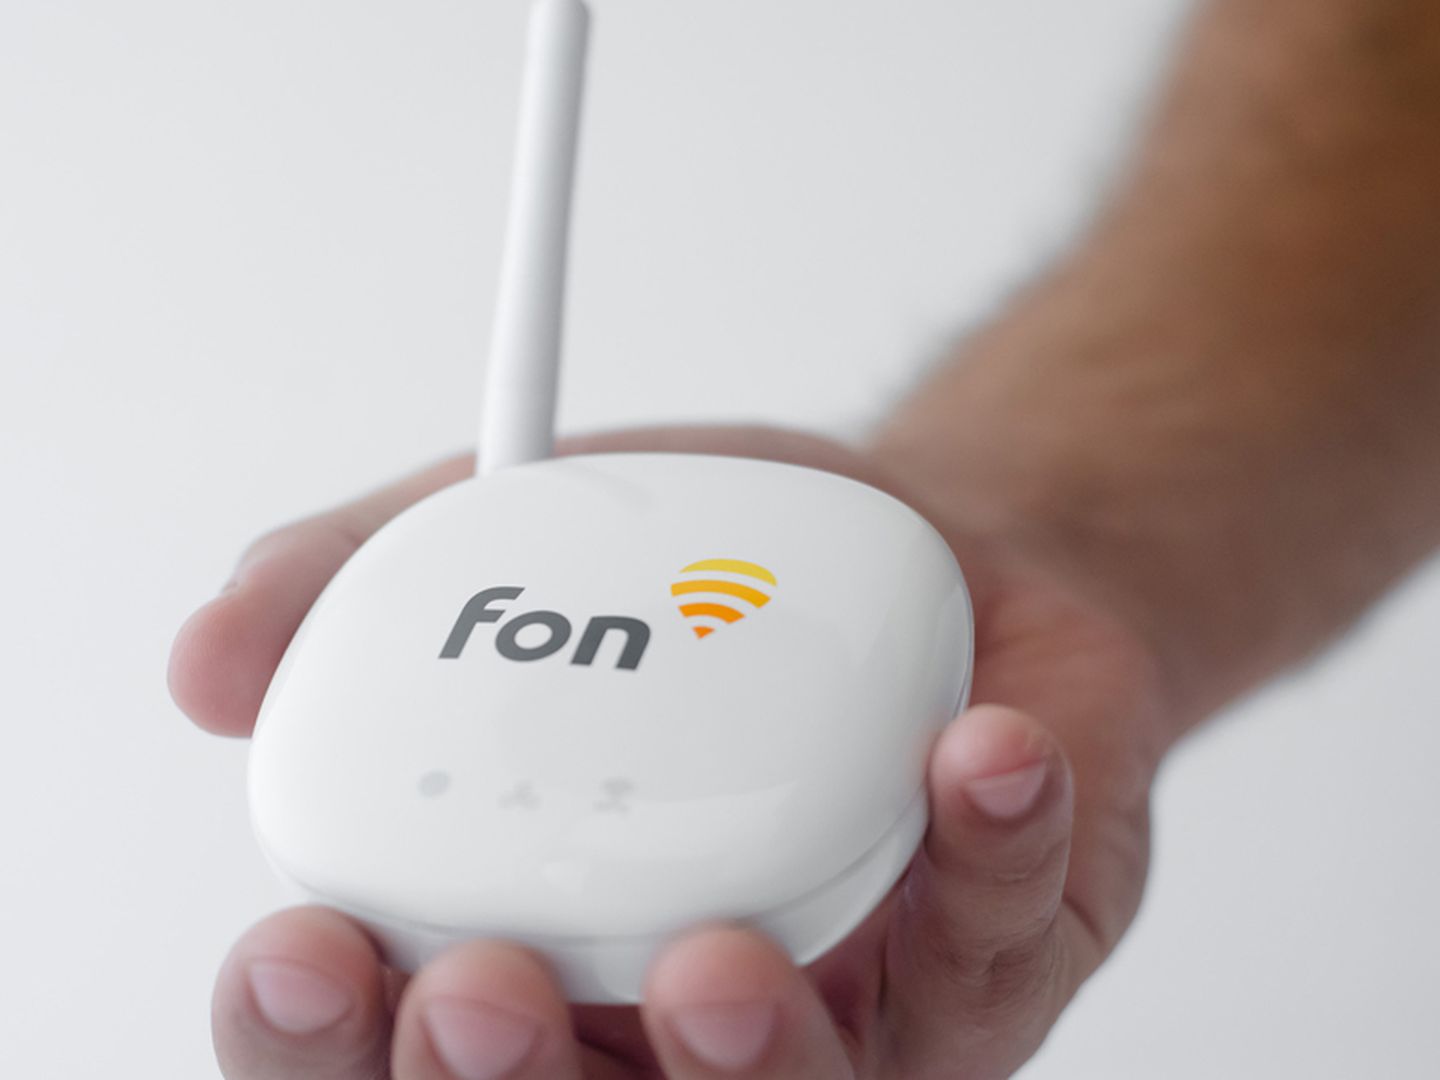 Los dispositivos con los que trabaja Fon reciben el nombre de 'fonera'